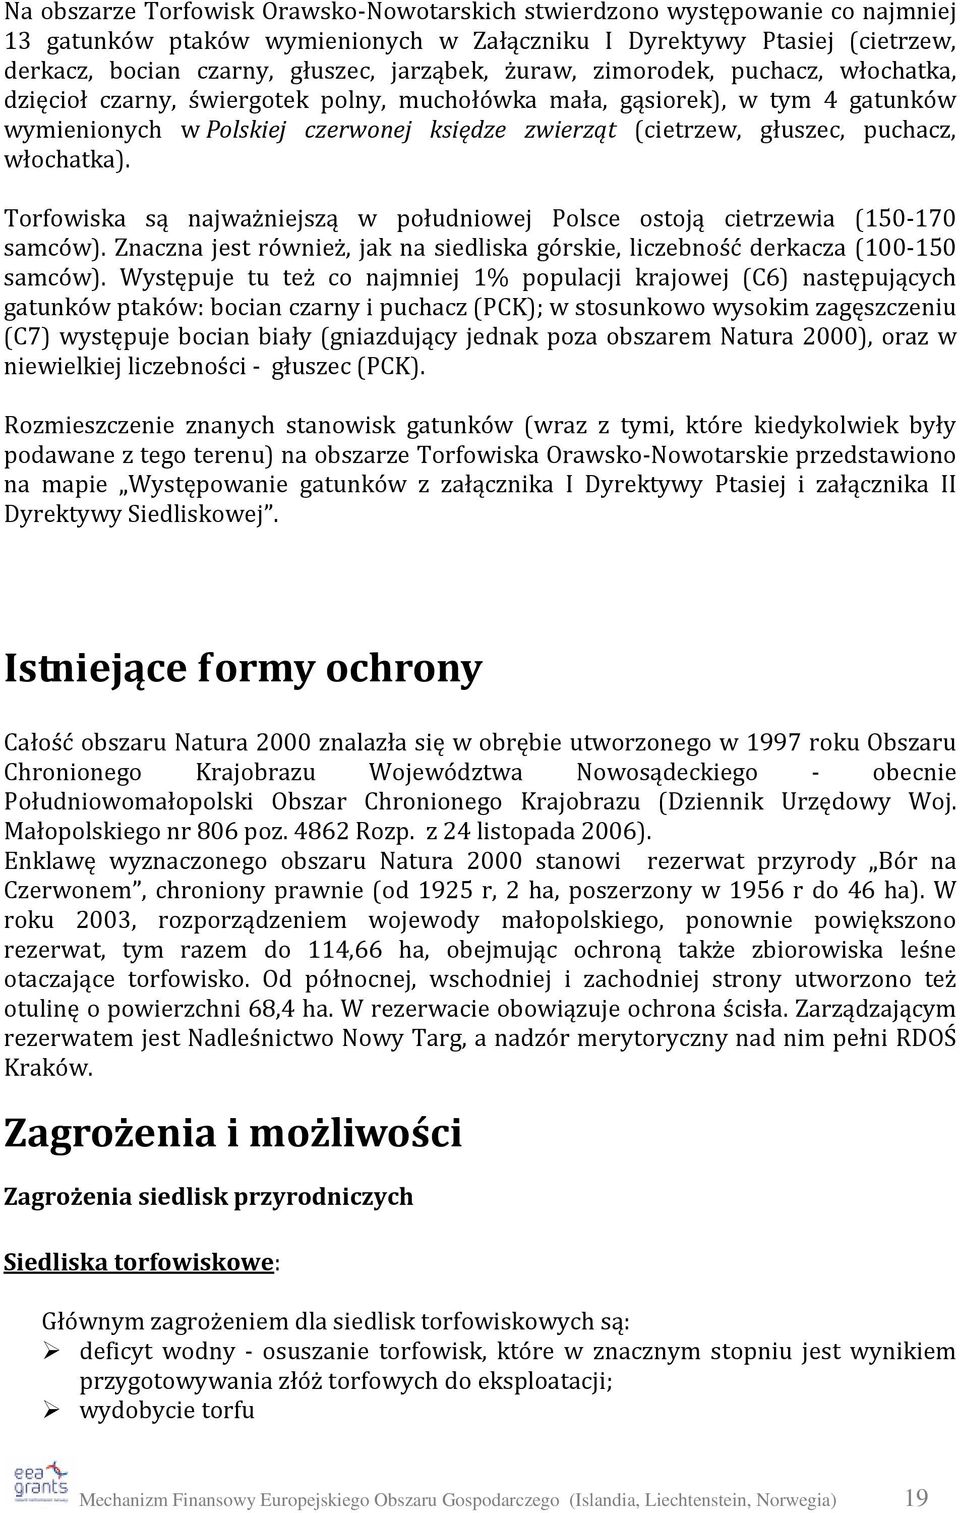 włochatka). Torfowiska są najważniejszą w południowej Polsce ostoją cietrzewia (150-170 samców). Znaczna jest również, jak na siedliska górskie, liczebność derkacza (100-150 samców).